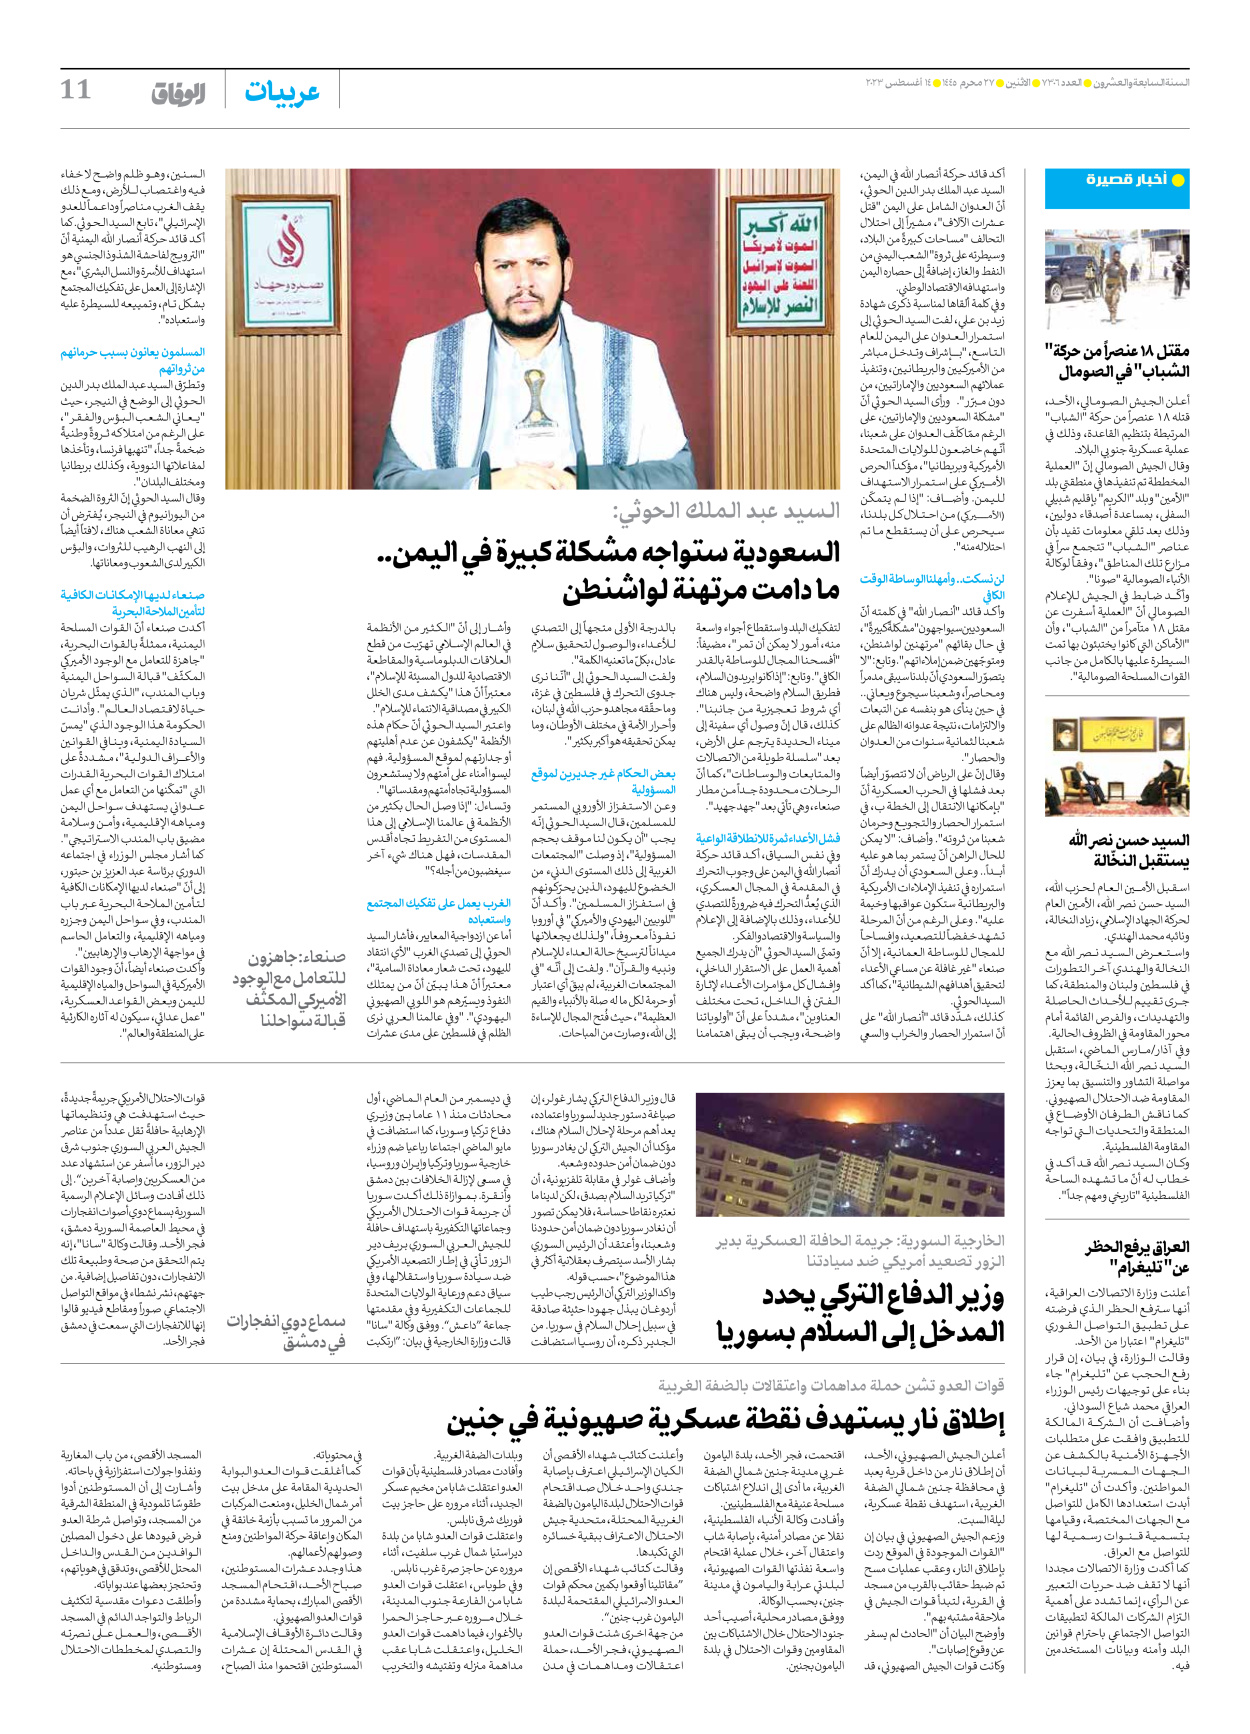 صحیفة ایران الدولیة الوفاق - العدد سبعة آلاف وثلاثمائة وستة - ١٤ أغسطس ٢٠٢٣ - الصفحة ۱۱